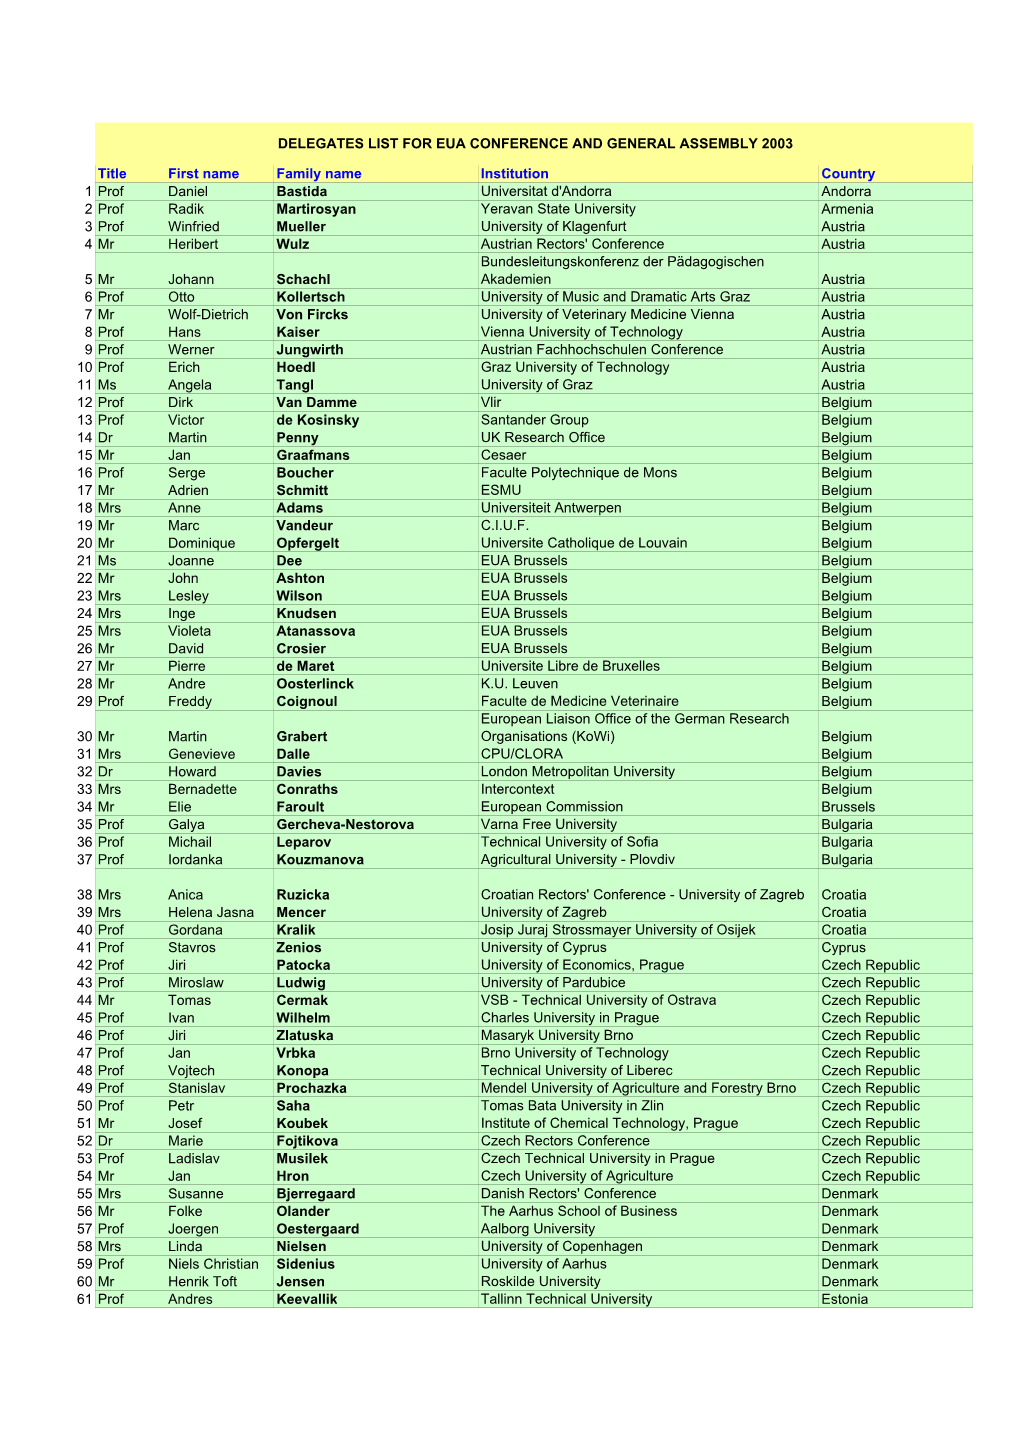 PDF of List of Delegates